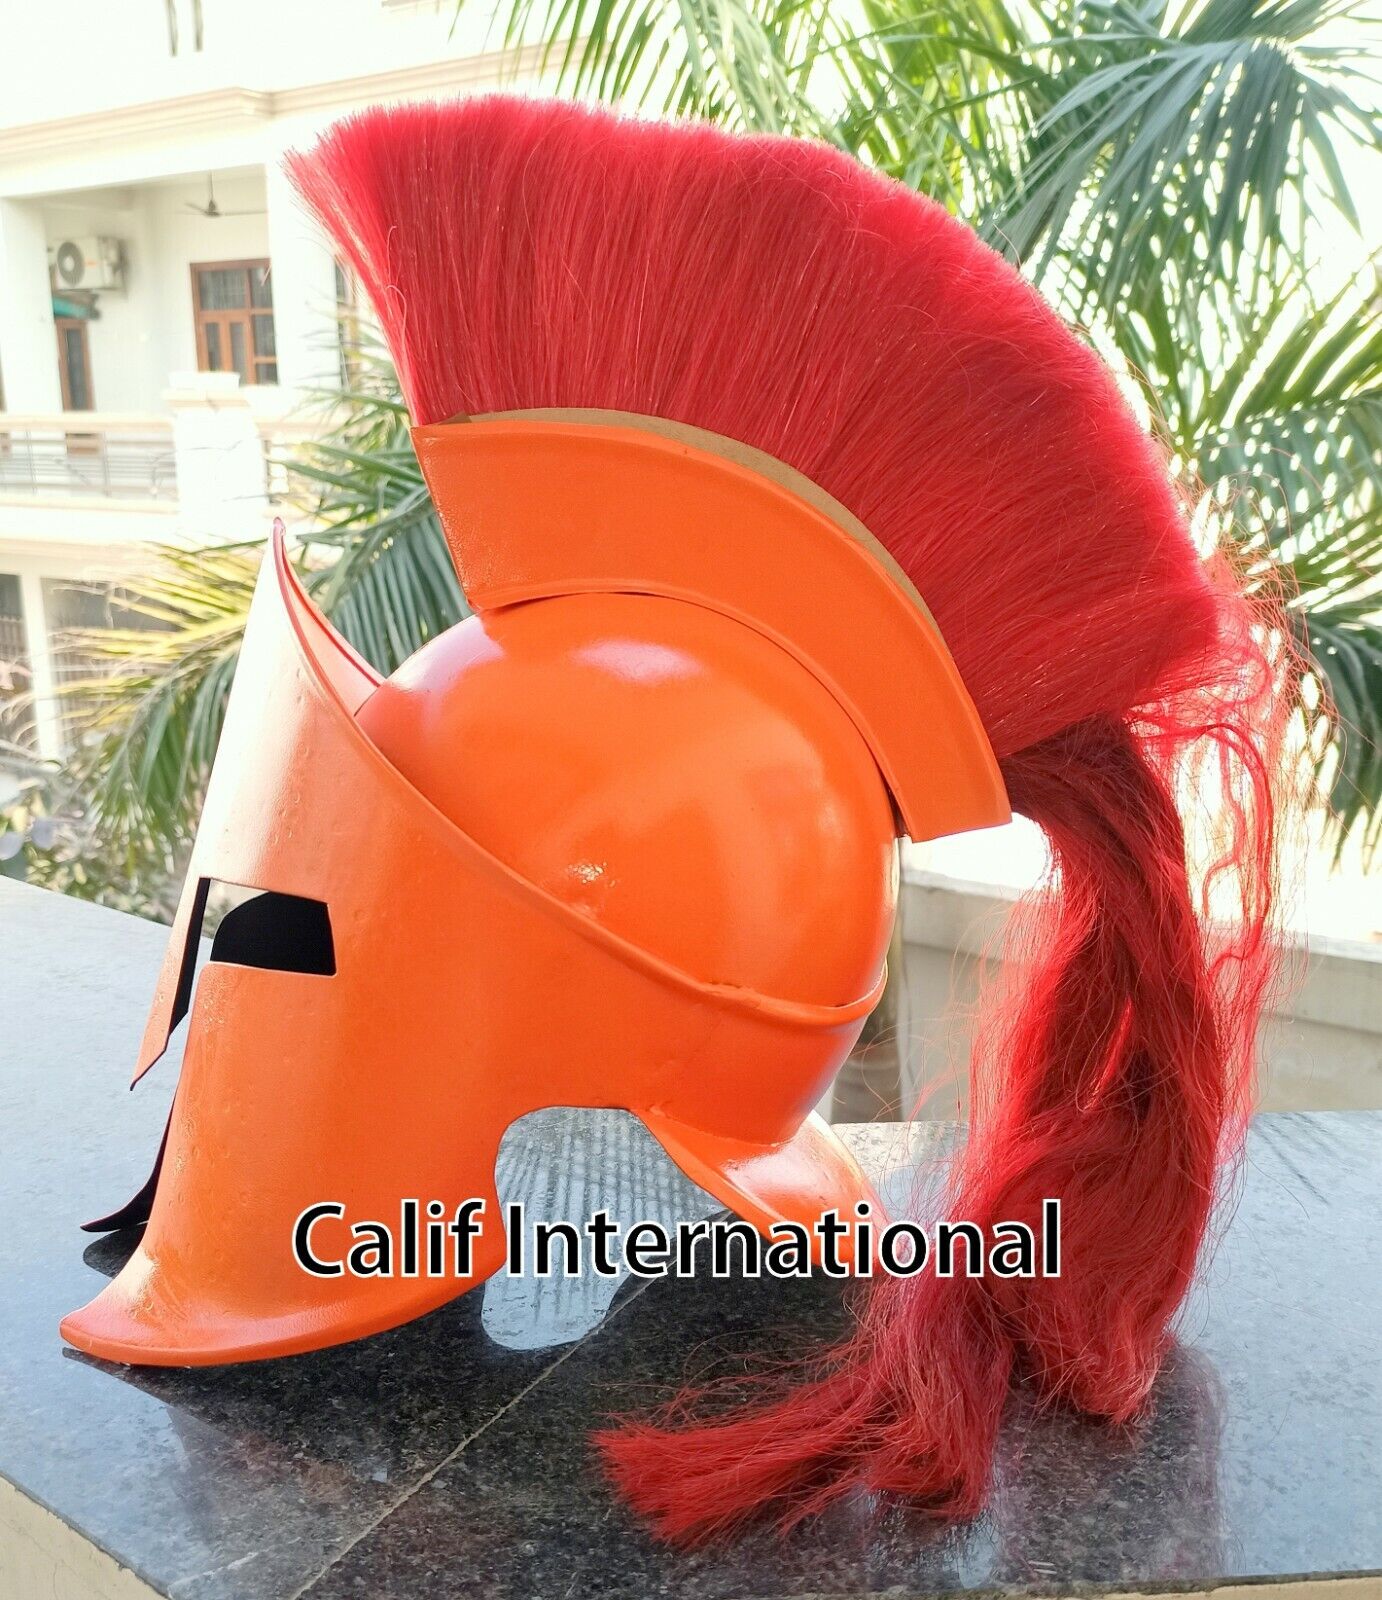 300 Spartan Helmet With Red Plume King Leonidas Replica Helmet Medieval Helmet 